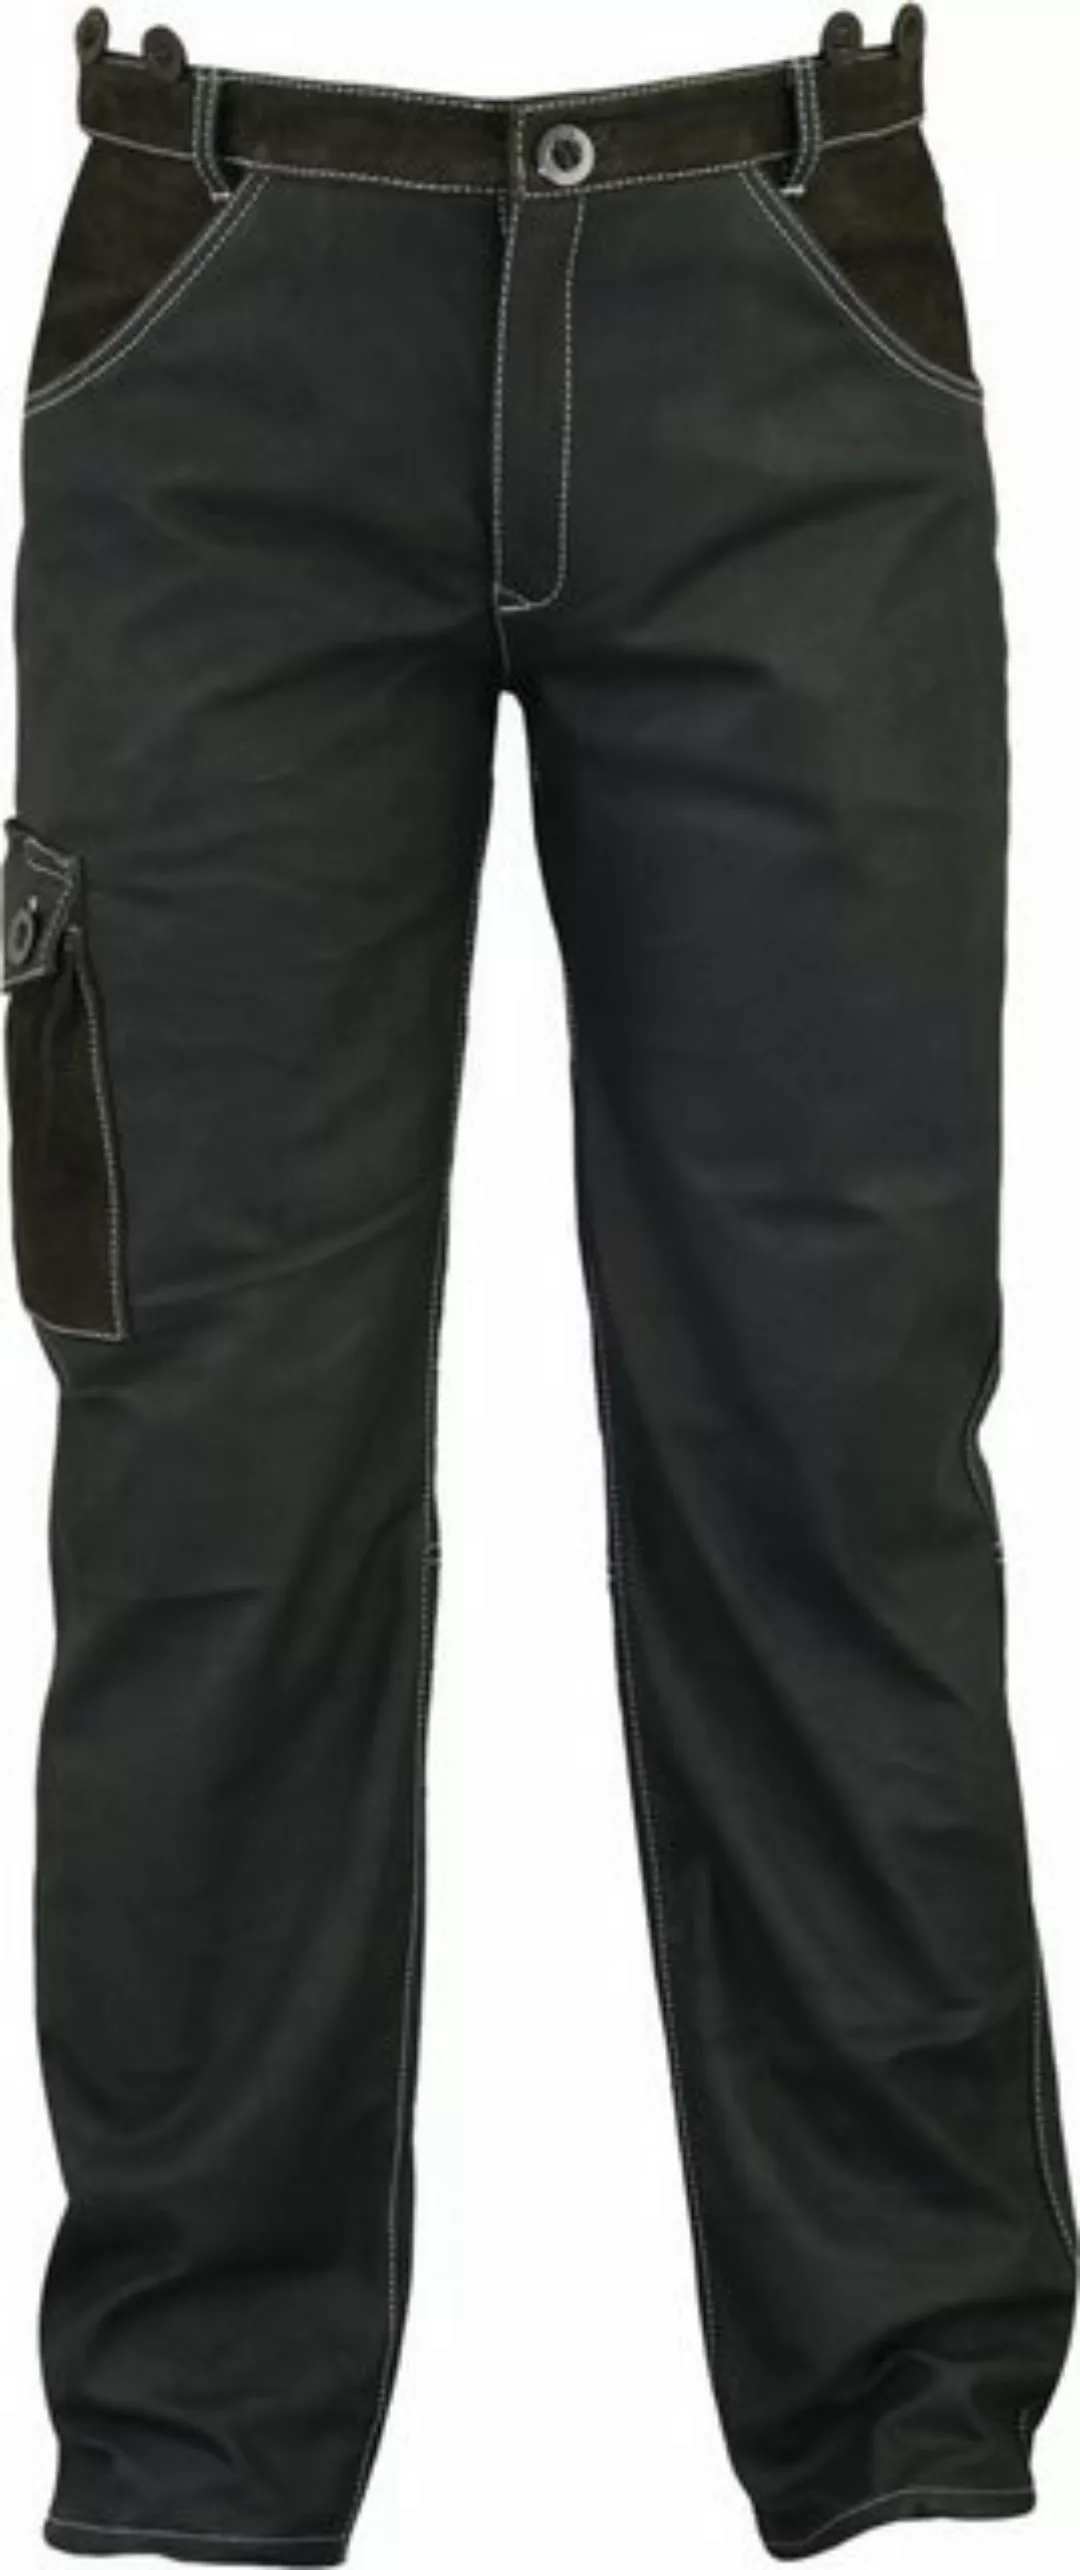 Fuente Leather Wears Bikerhose Lange Lederjeans Herren 5 Pocket Lederhose N günstig online kaufen